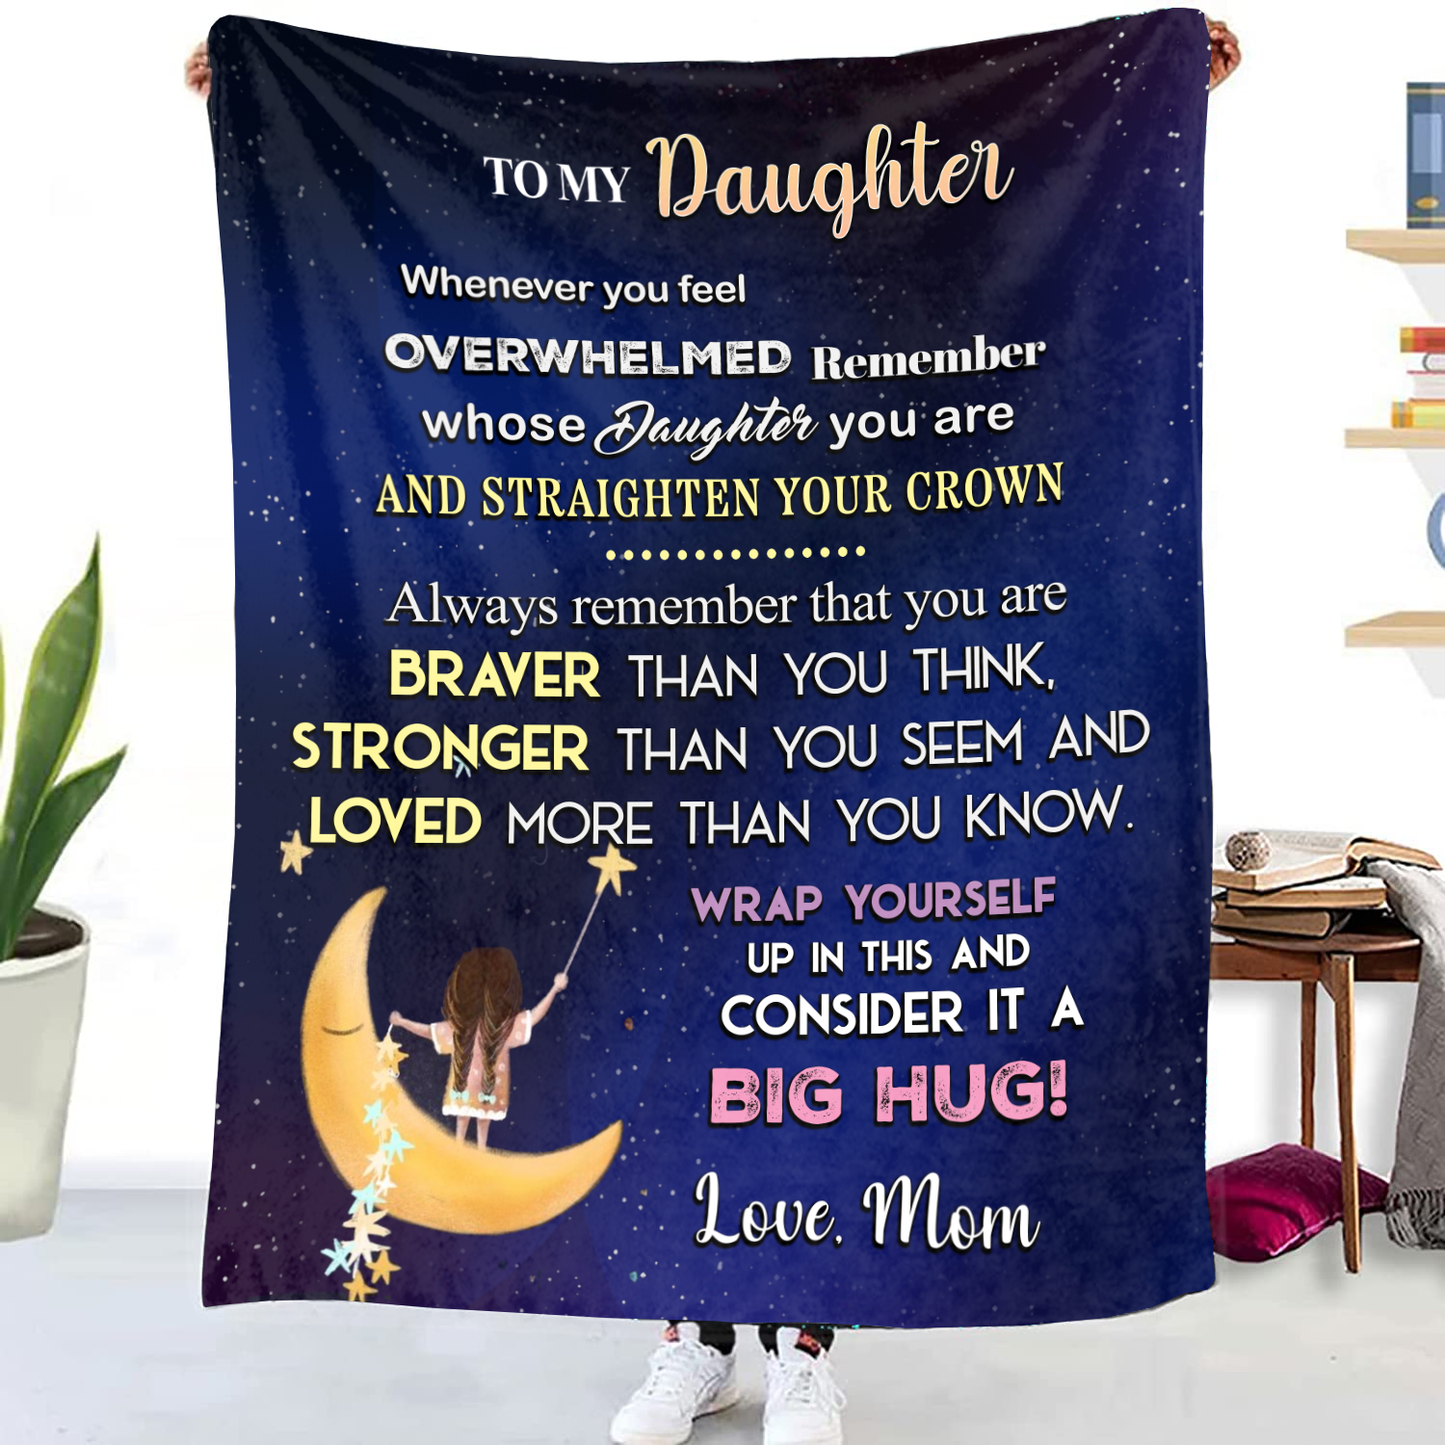 To My Daughter - Straighten Your Crown Premium Mink Sherpa Blanket